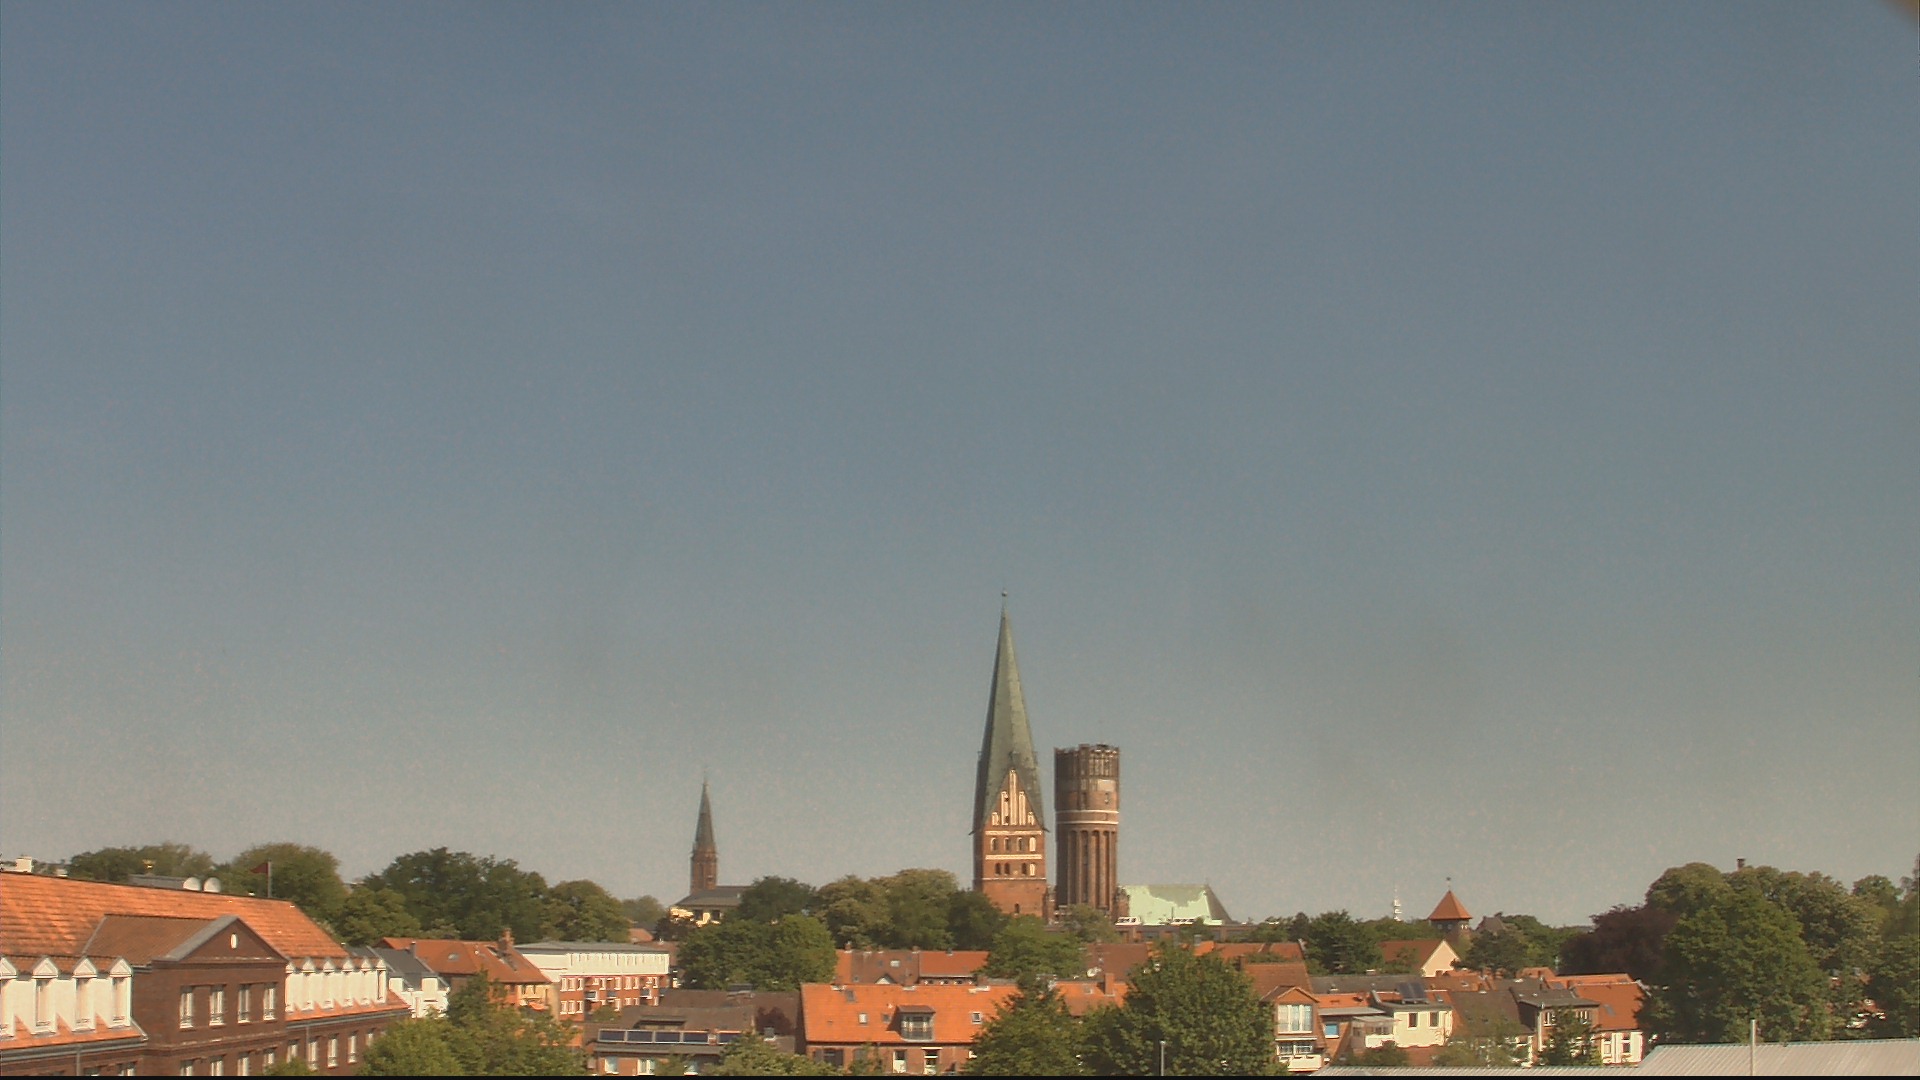 Lüneburg Wed. 10:47